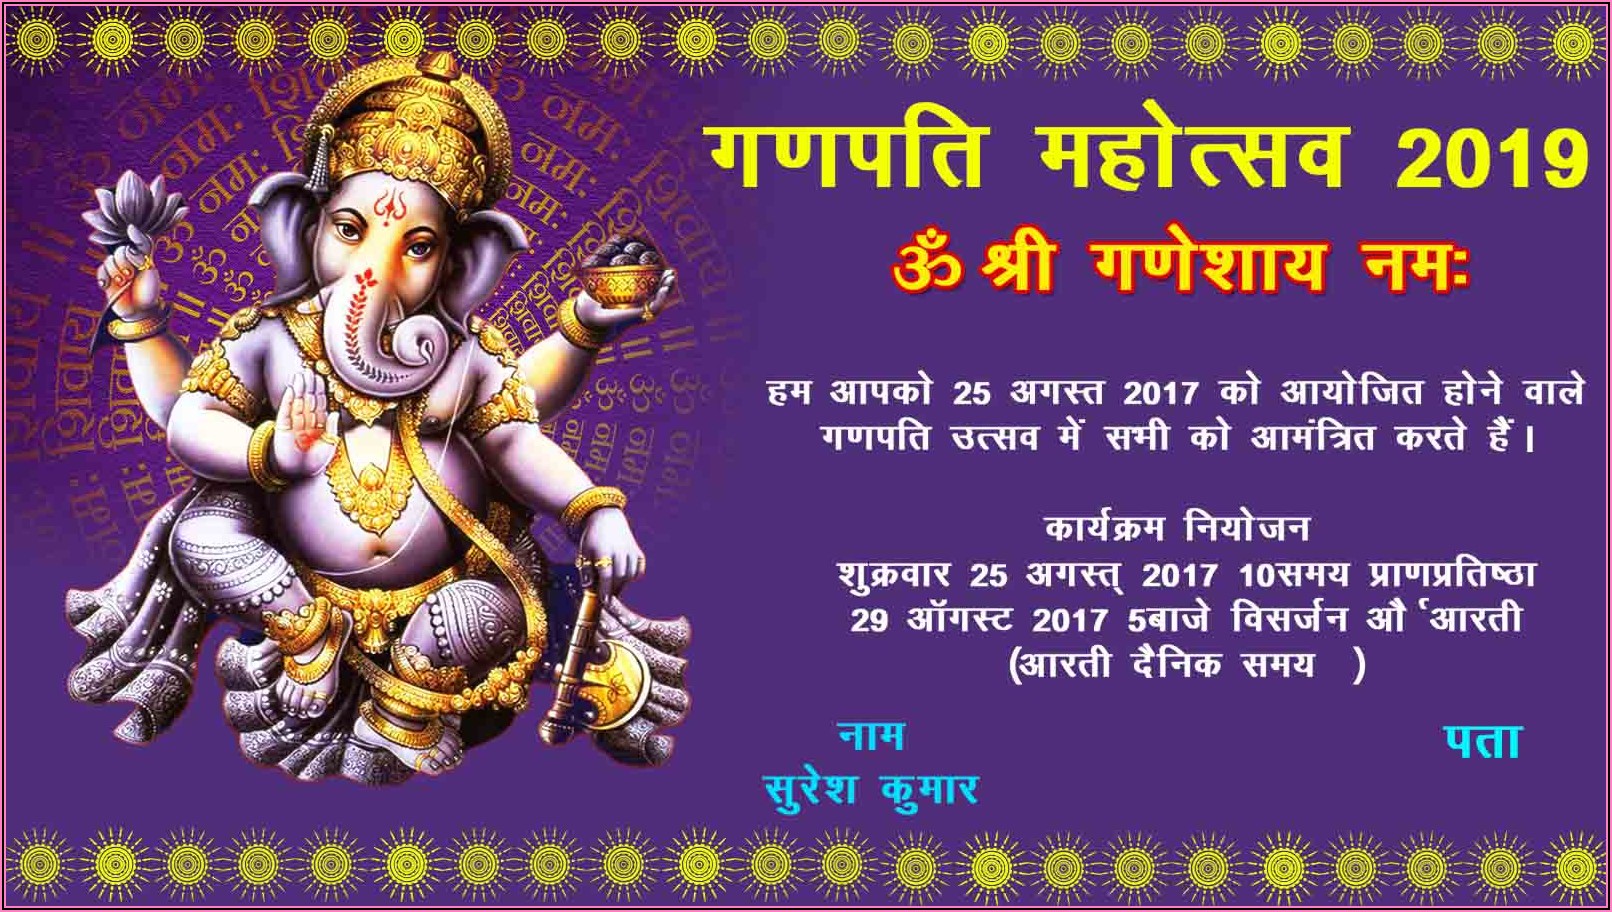 Ganesh Puja Invitation Card Format In Odia